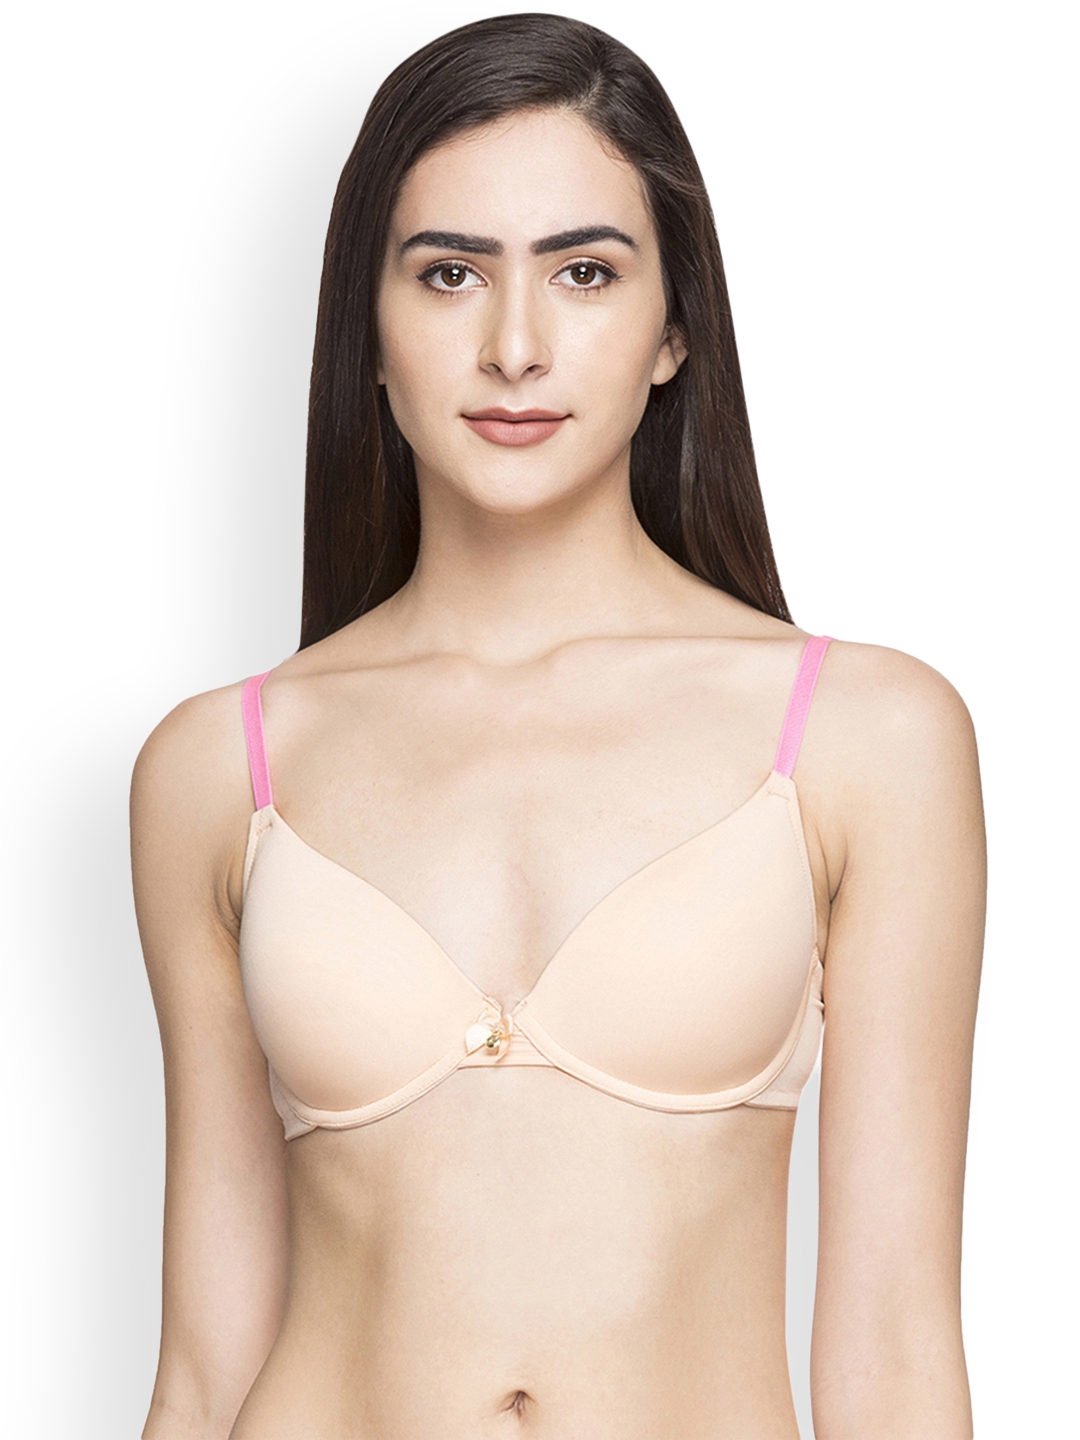 Buy Sonari Violet Women's T-shirt Bra - Nude (34B) Online